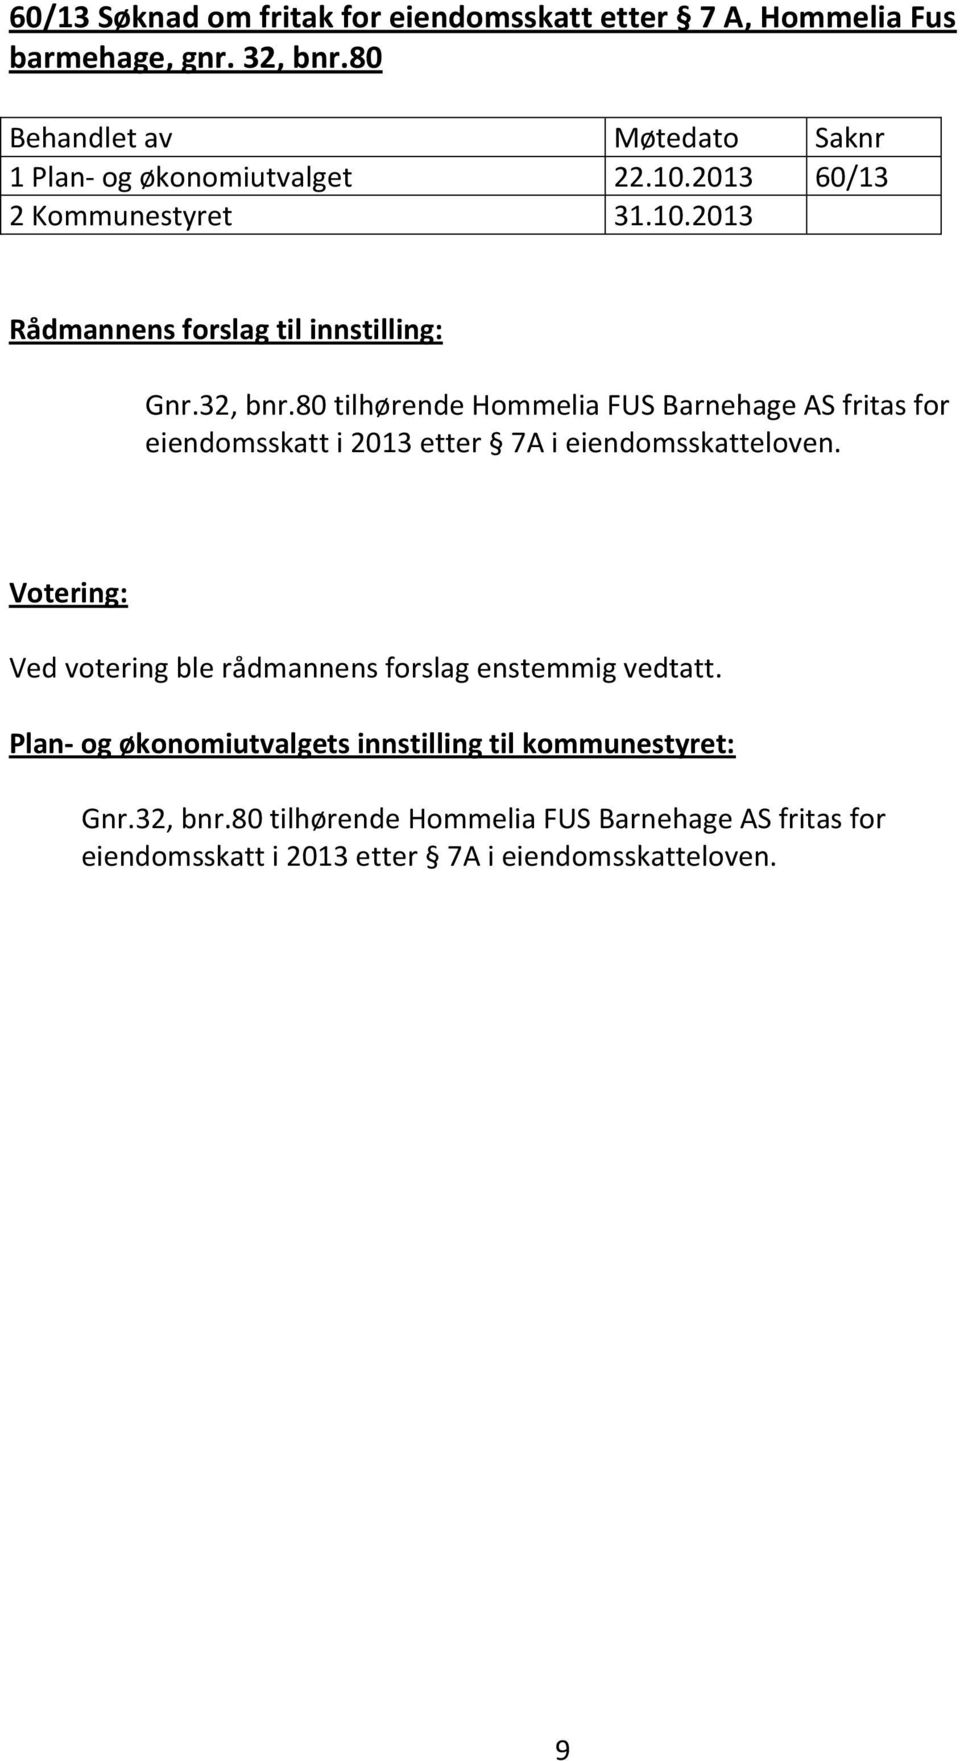 80 tilhørende Hommelia FUS Barnehage AS fritas for eiendomsskatt i 2013 etter 7A i eiendomsskatteloven.